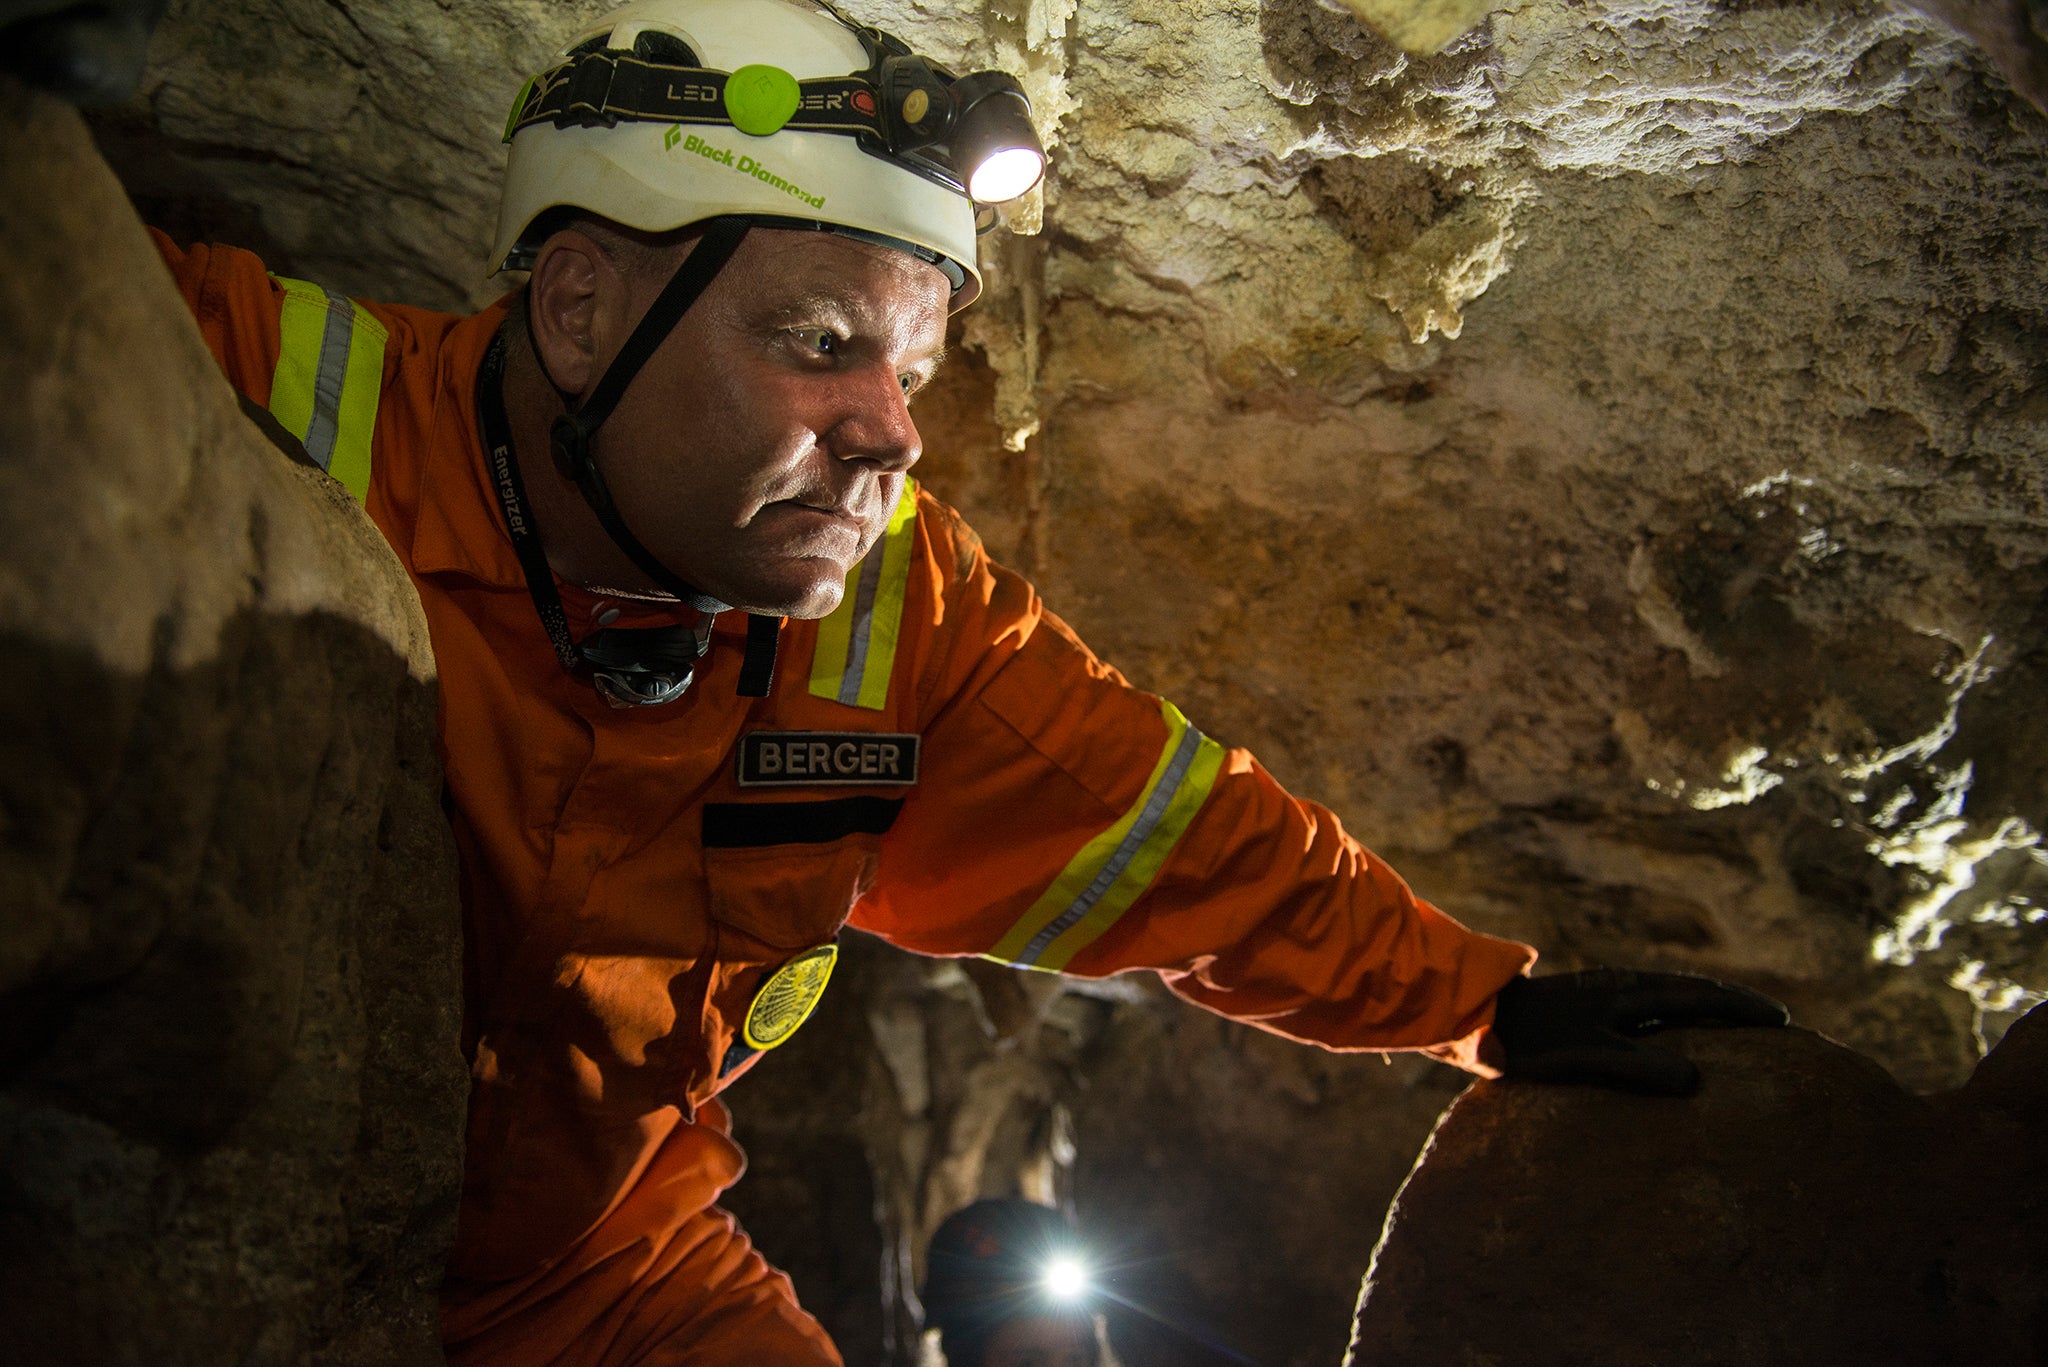 El explorador residente de National Geographic Lee Berger y jefe de la expedición de excavación, en el interior de la cueva Rising Star de Sudáfrica, donde se descubrieron elementos fósiles pertenecientes a H. naledi , una nueva especie de pariente humano